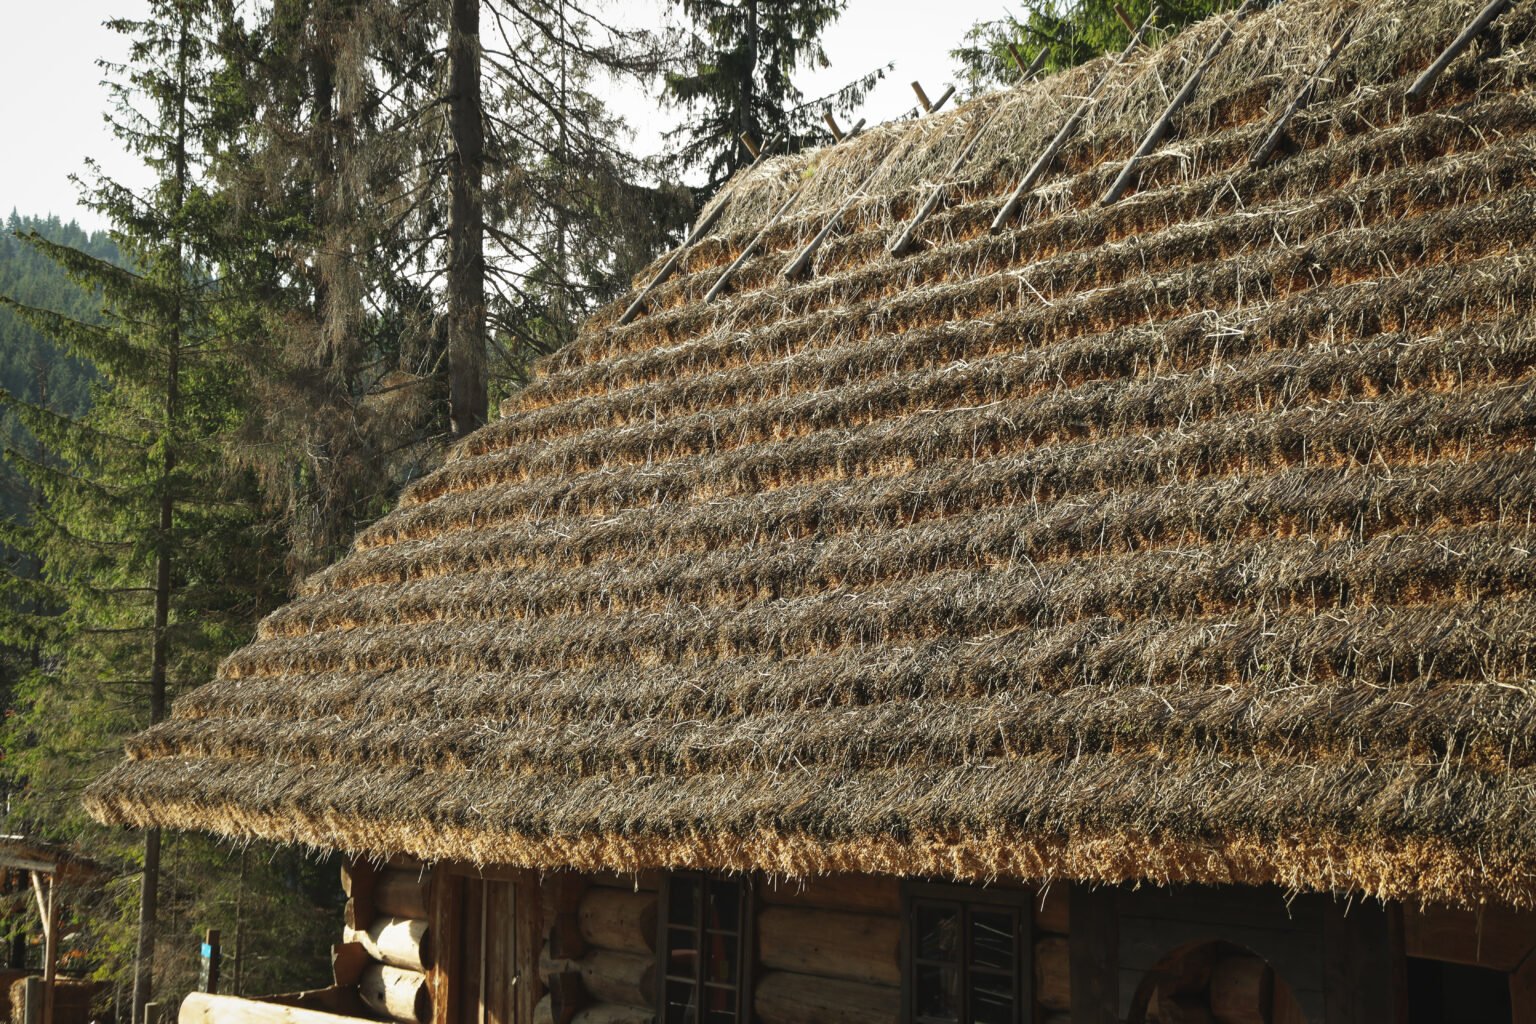 Old Ukrainian house in mountain resort park in autumn season